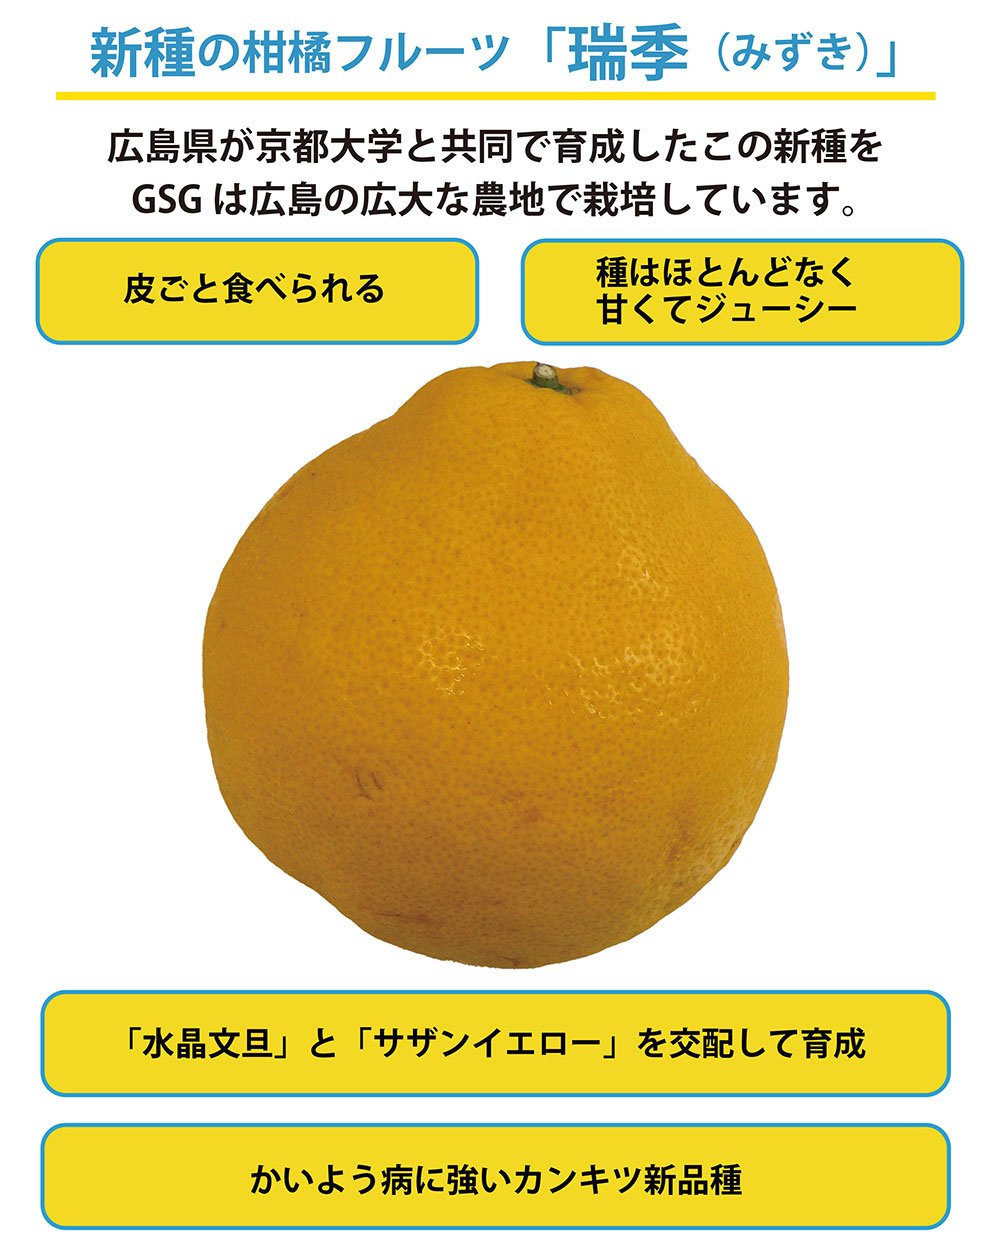 A new type of citrus fruit, Mizuki.